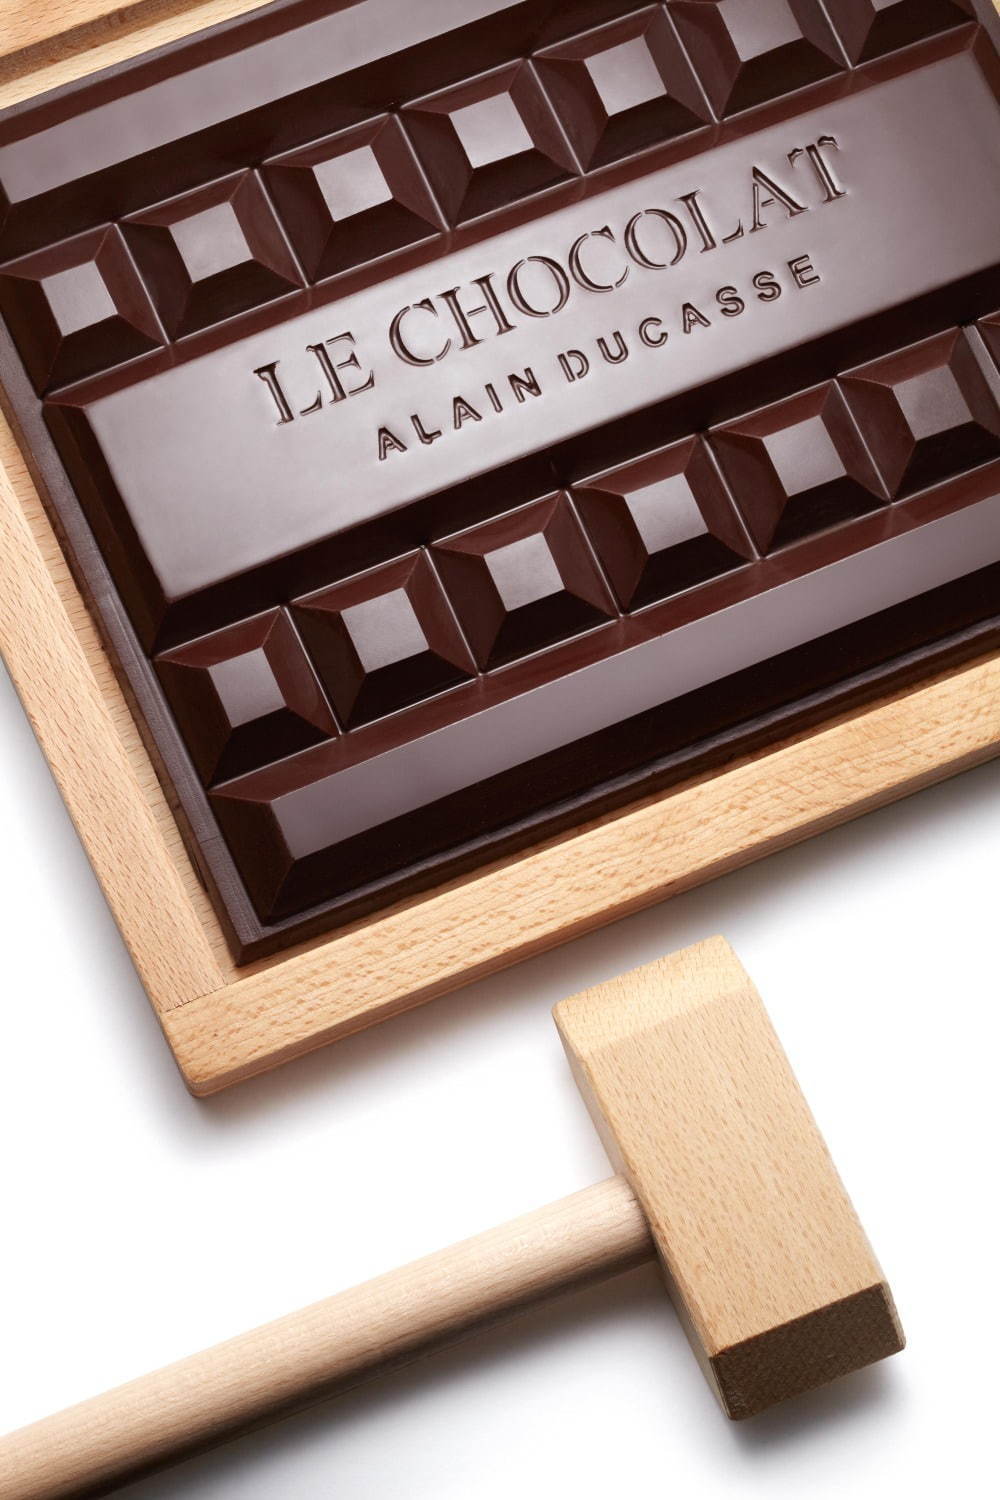 ル・ショコラ・アラン・デュカス	(Le Chocolat Alain Ducasse) ル・ショコラ・アラン・デュカス｜写真12